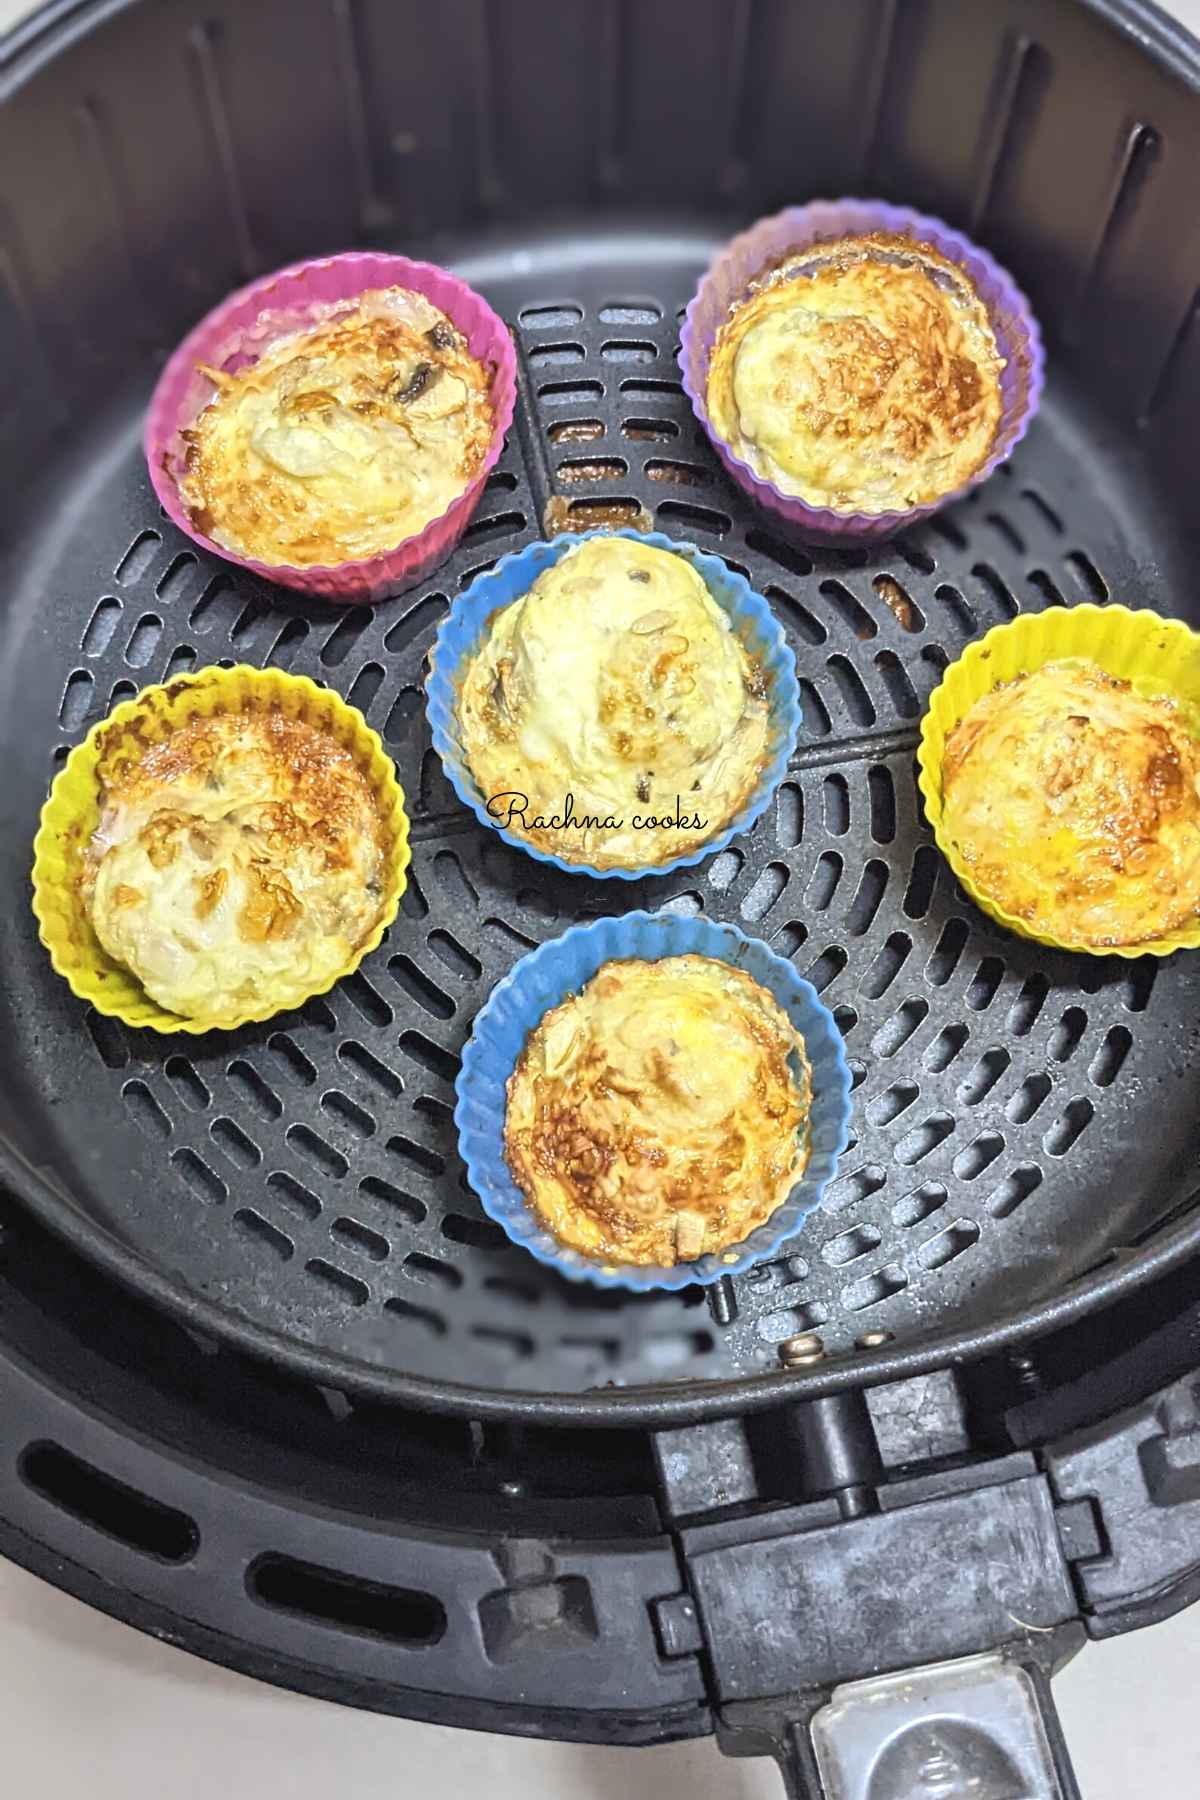 6 egg bites after air frying in air fryer basket.